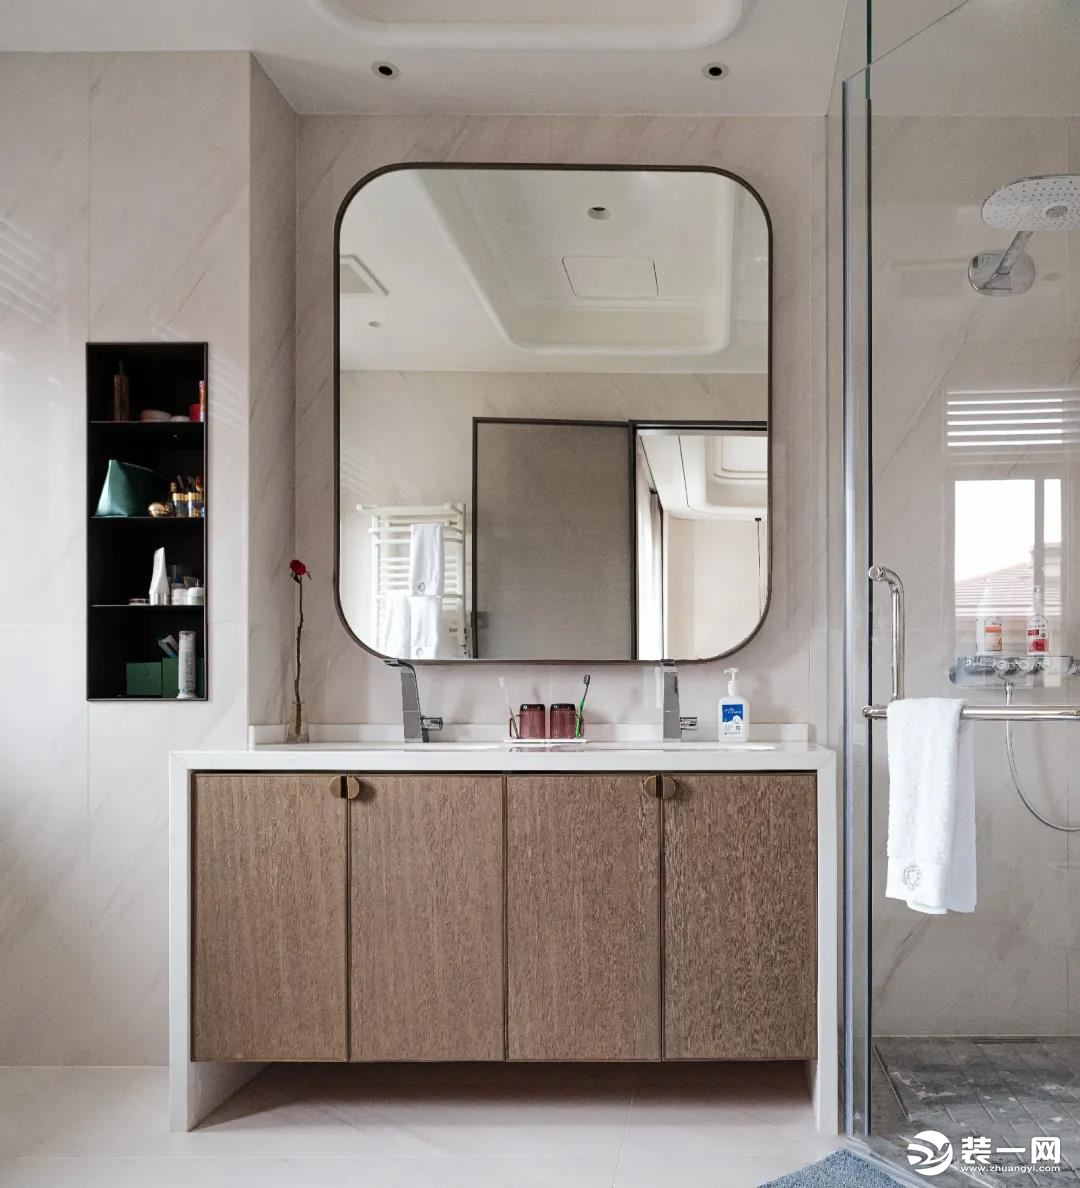 卫生间在延续“禅意白+原木色”的主色调的基础上，更多地运用了现代元素，让空间趋于简洁明净。